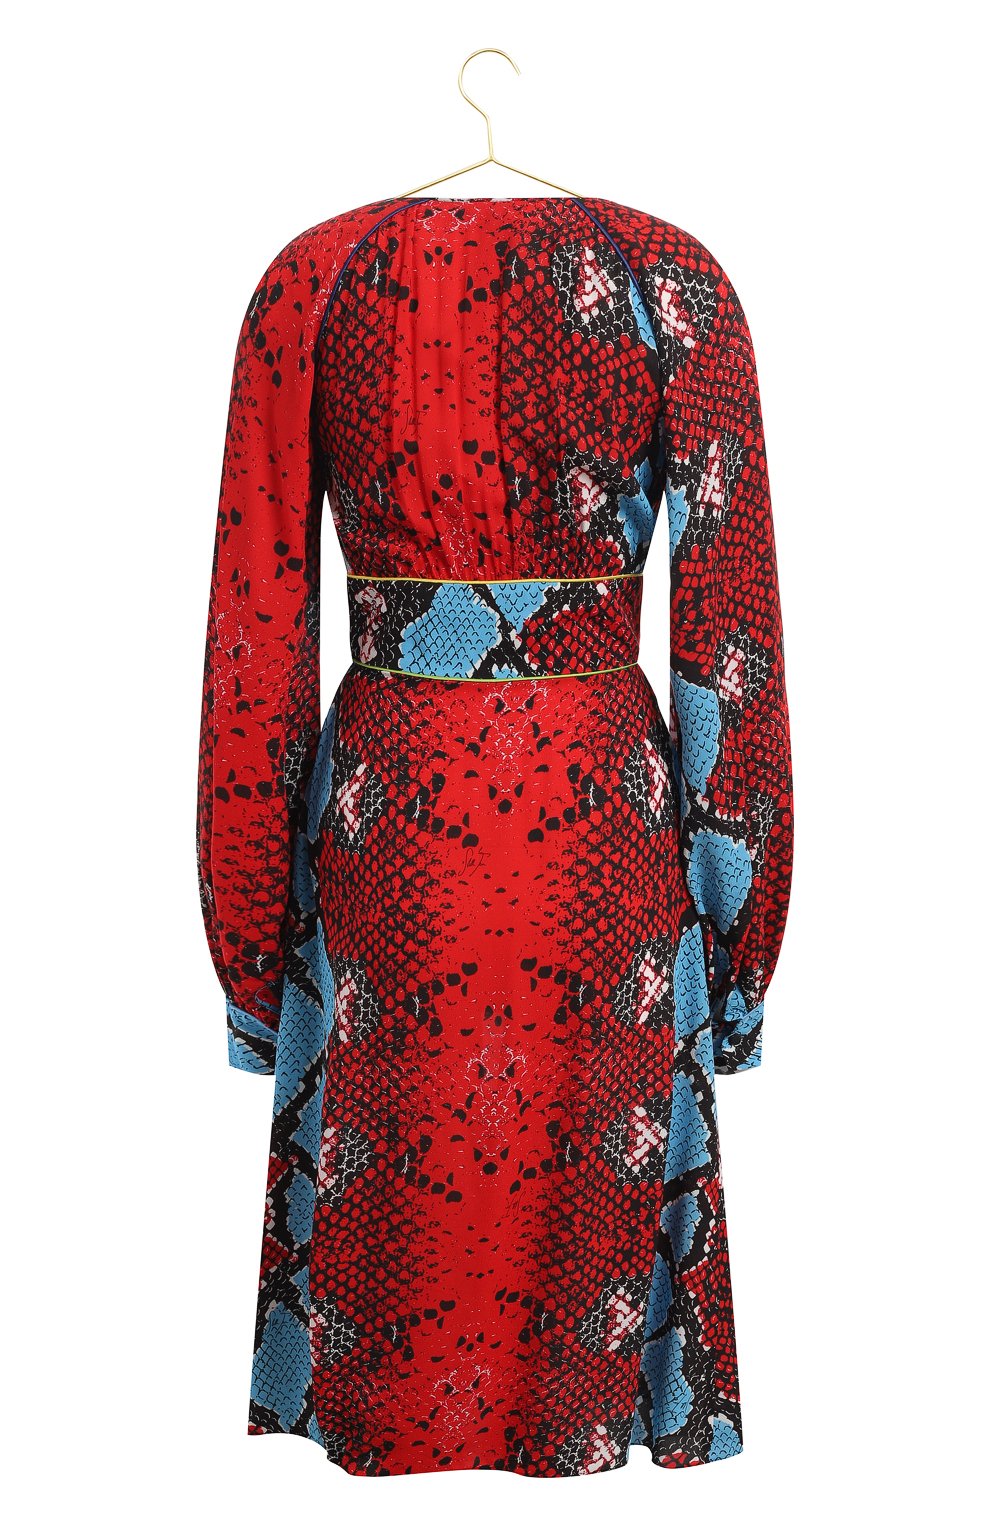 Платье из вискозы | Stella Jean | Красный - 2